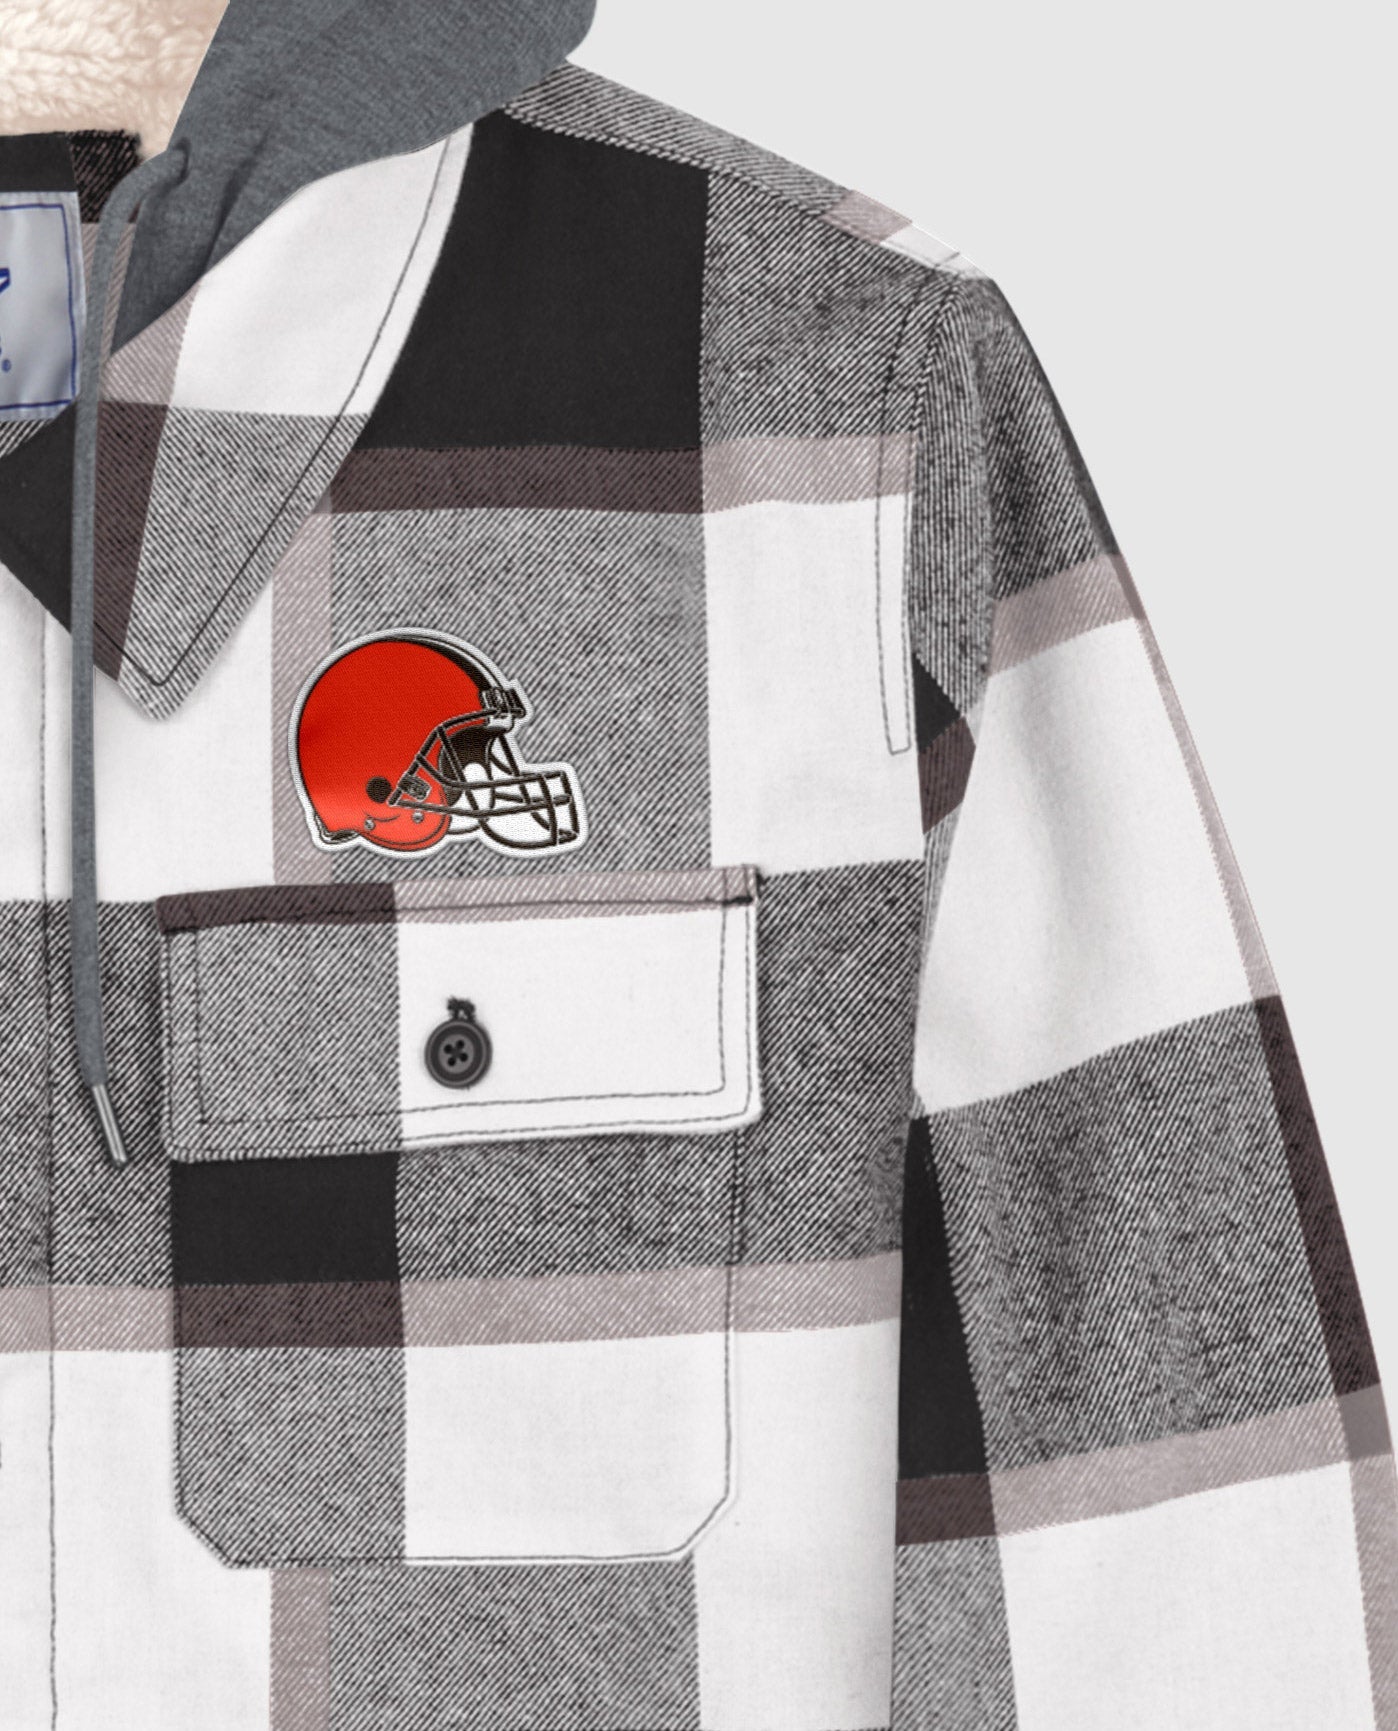 Cleveland Browns Twill Applique Logo Above Left Pocket | Black